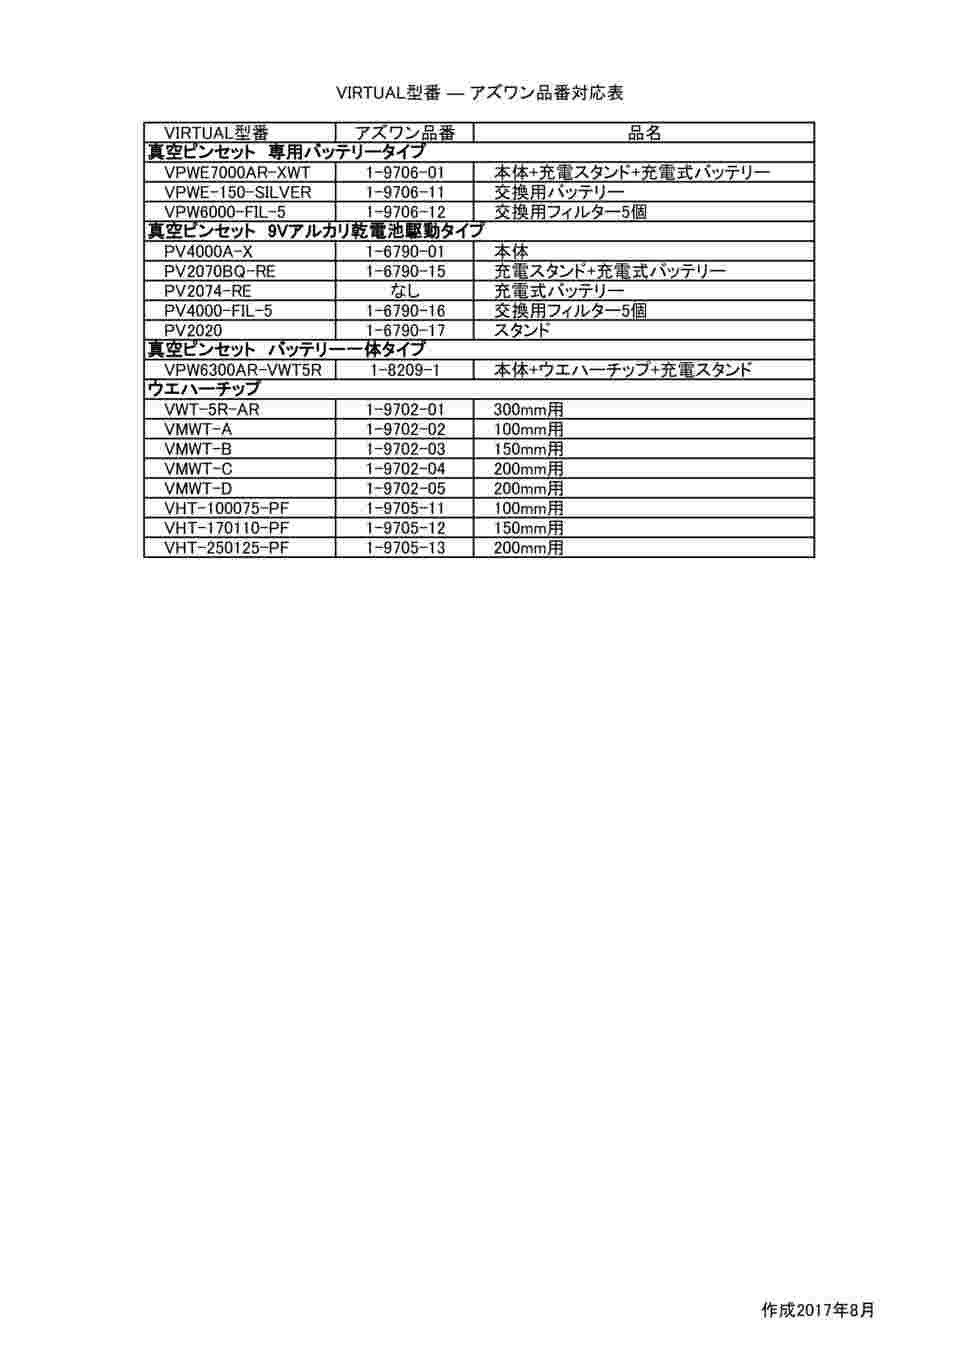 1-6790-17 ウエハー用真空ピンセット用 スタンド PV-2020 【AXEL